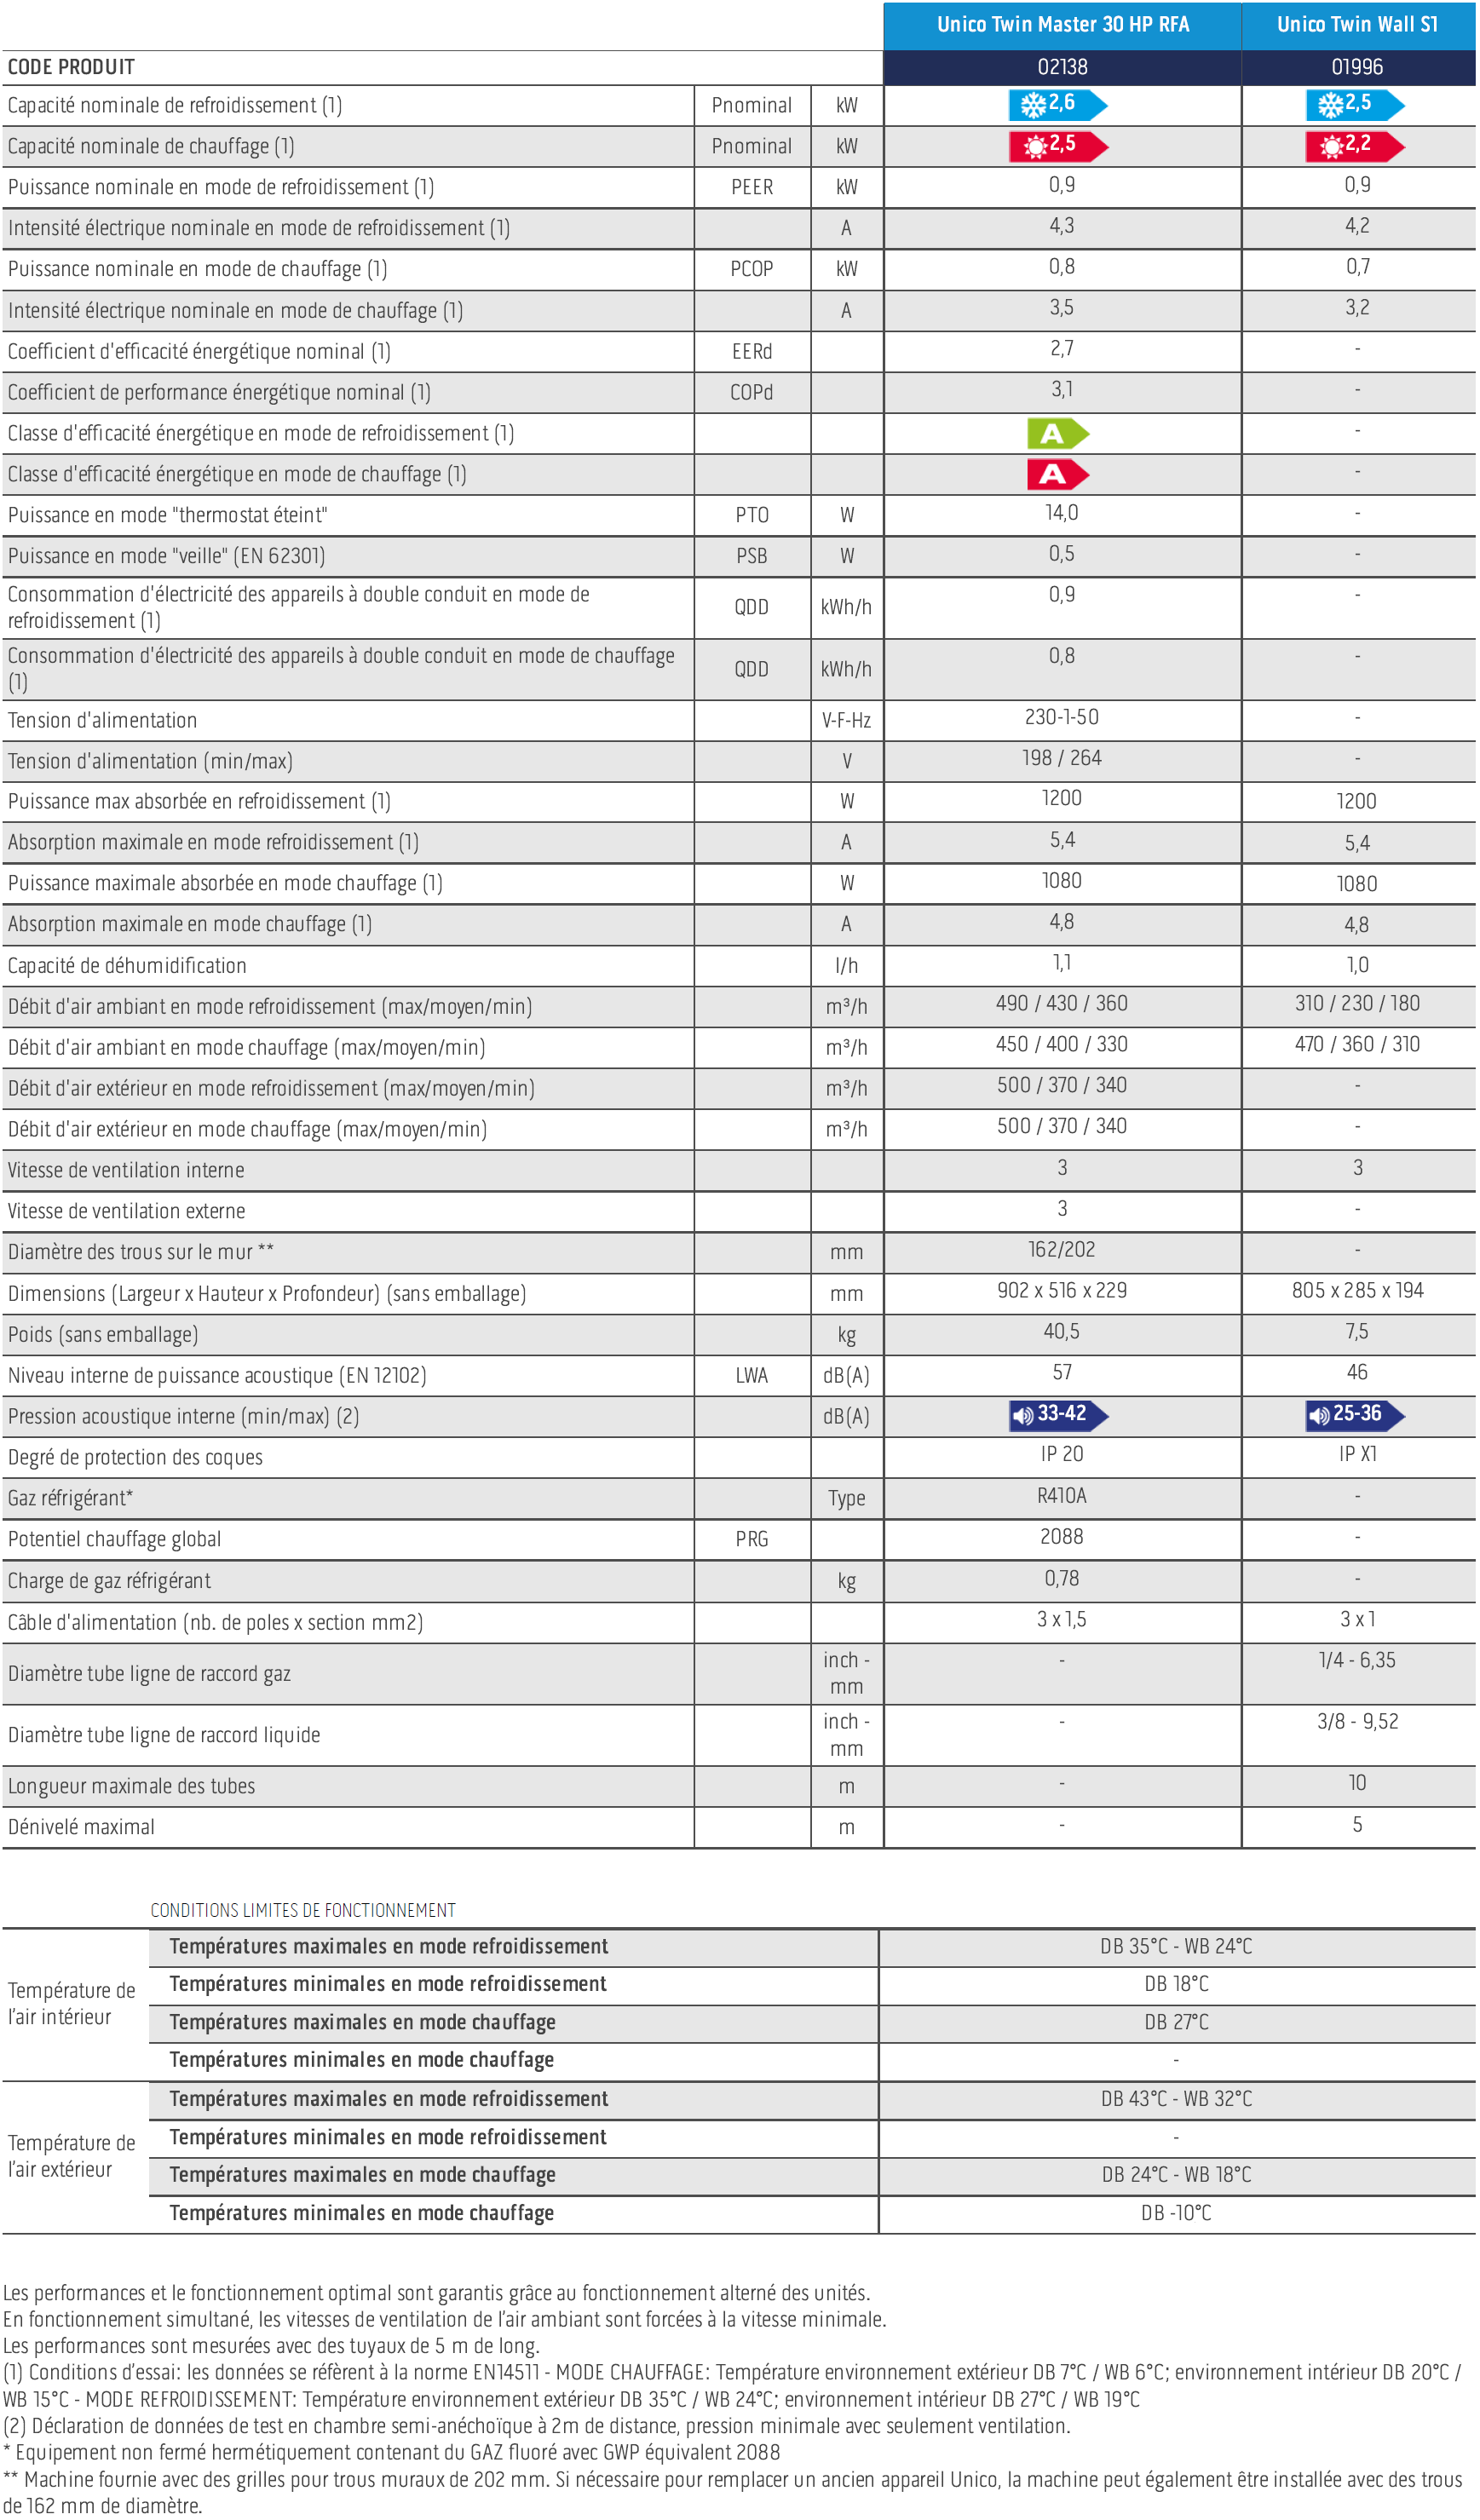 Tableau des caractéristiques techniques des climatiseurs bibloc UNICO TWIN MASTER 30 HP RFA + TWIN WALL S1